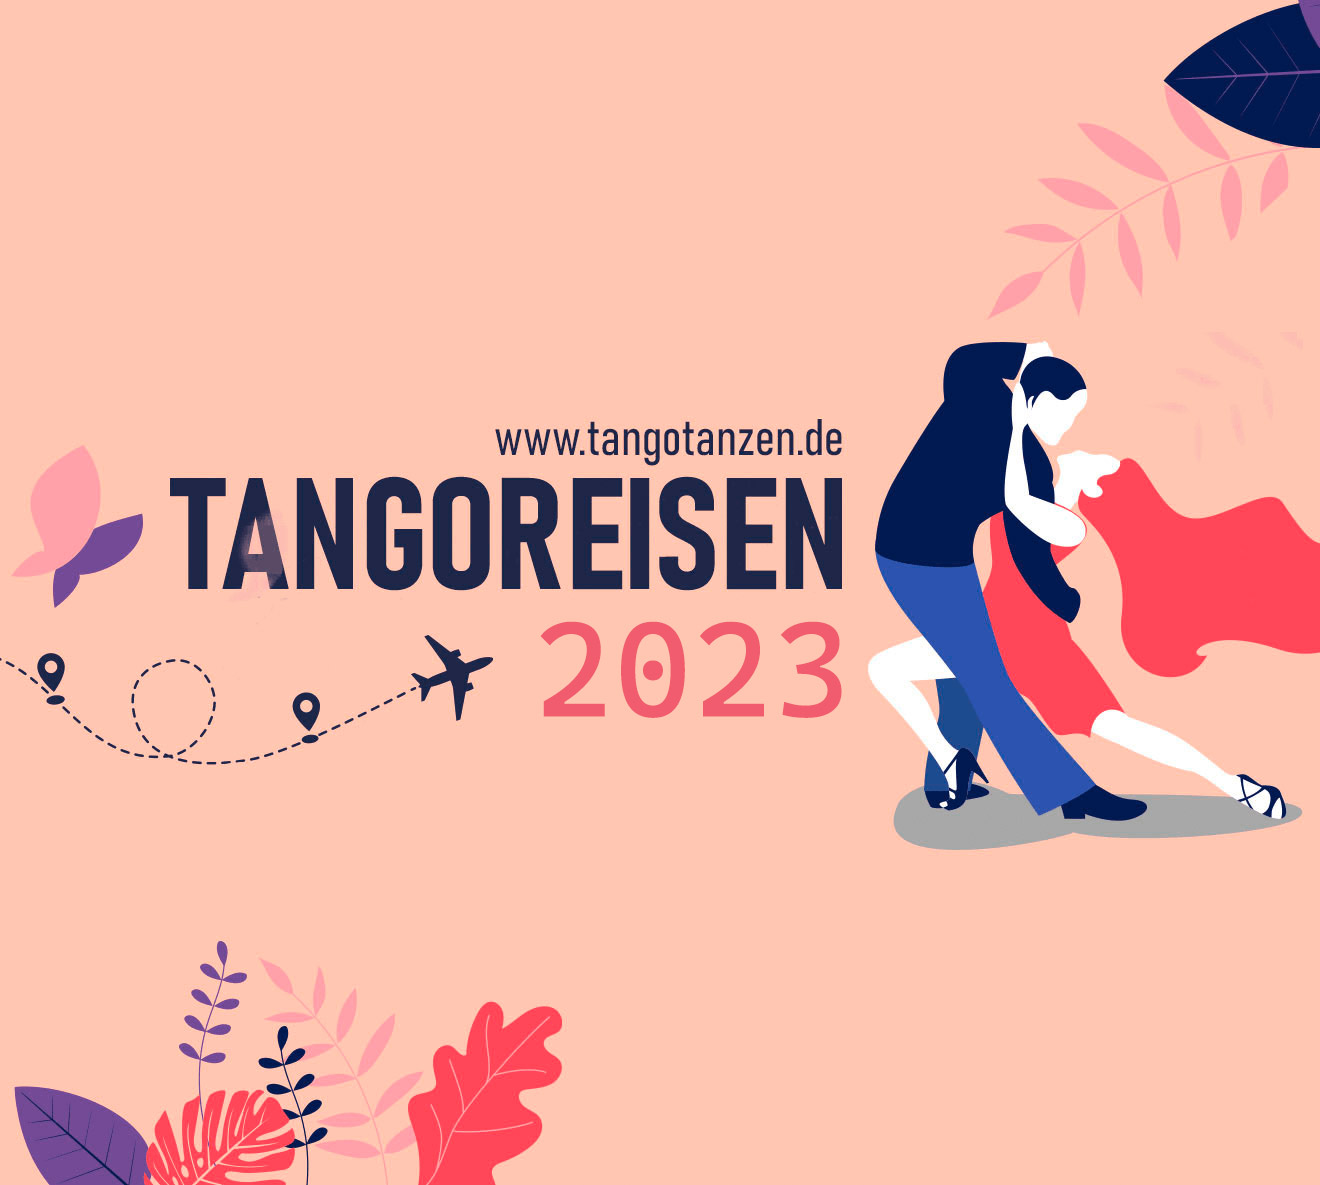 Tangoreisen 2023